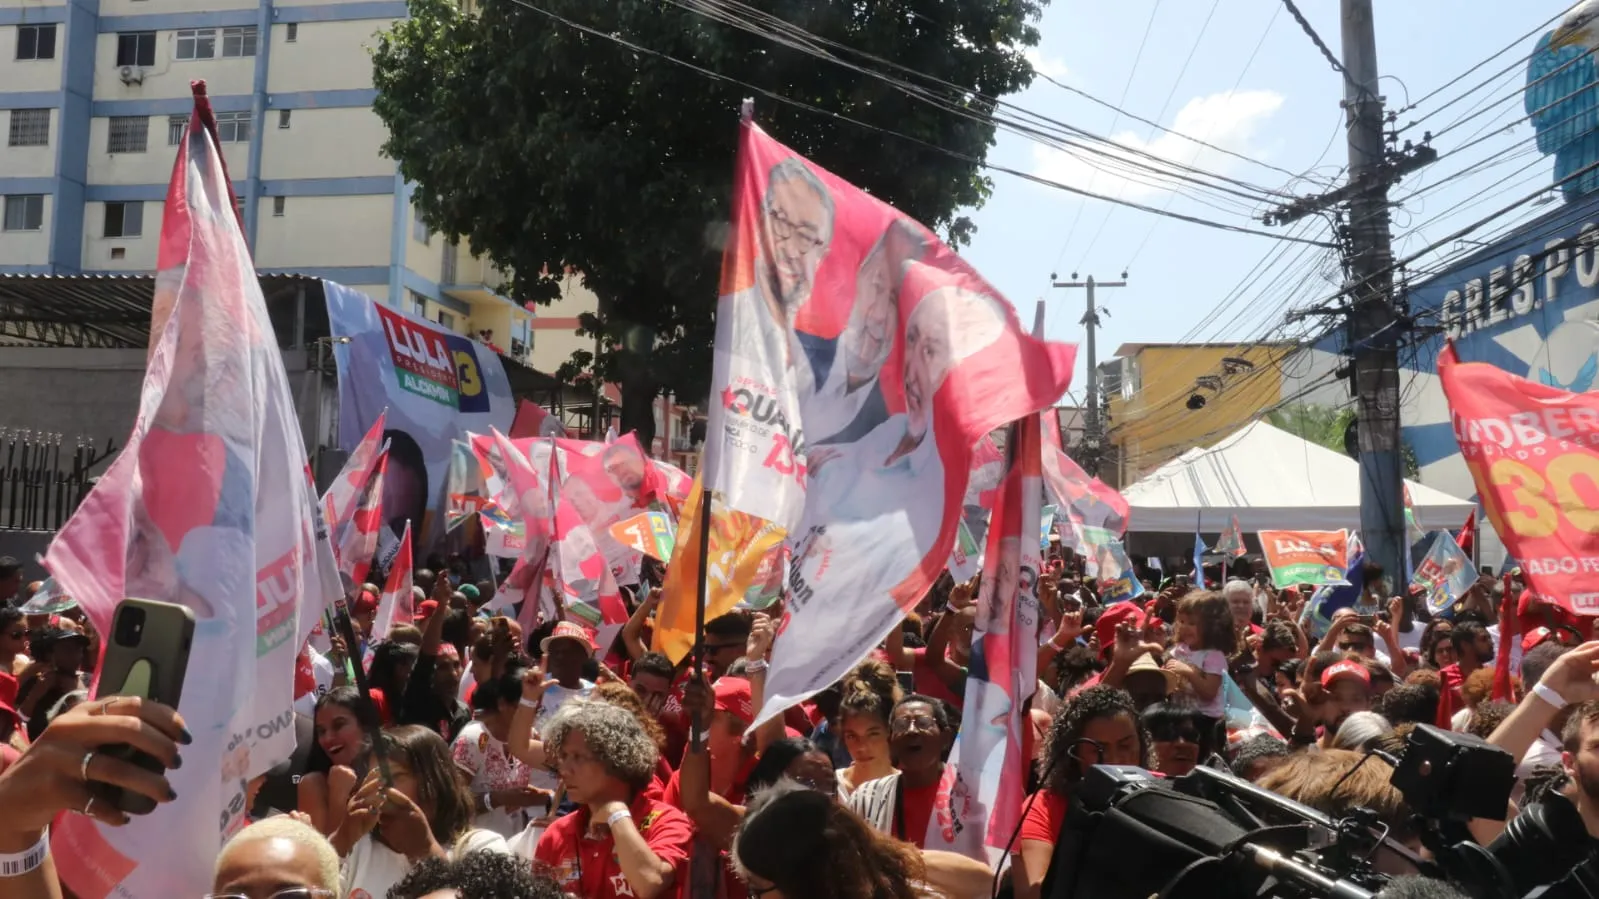 As ruas no retorno da quadra da escola de samba ficaram lotadas de apoiadores